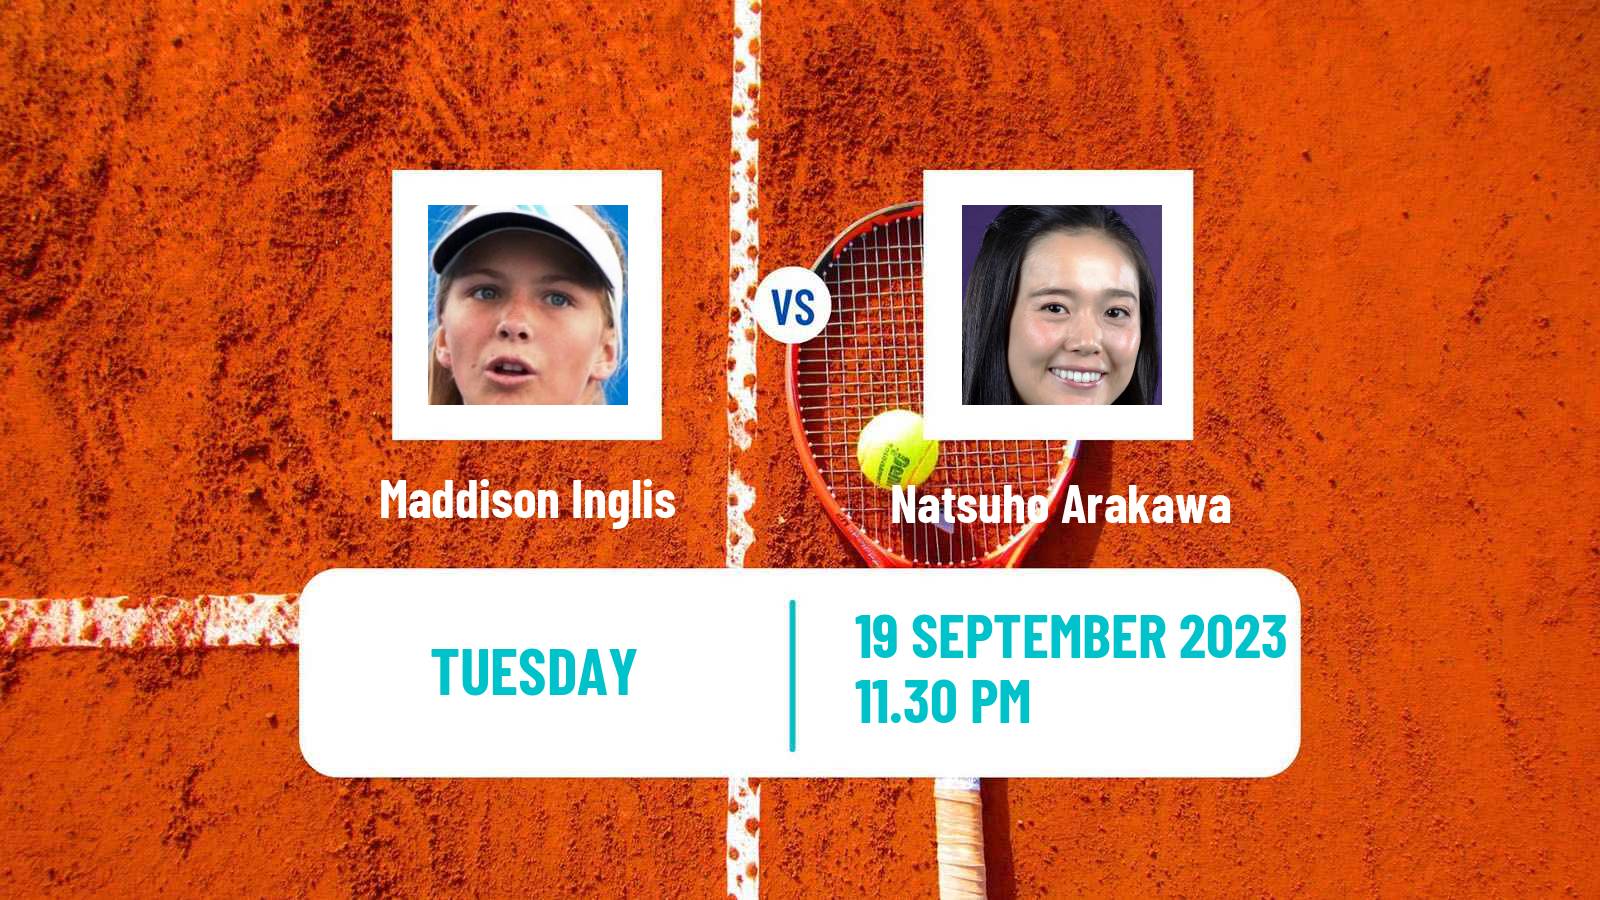 Tennis ITF W25 Perth 2 Women Maddison Inglis - Natsuho Arakawa